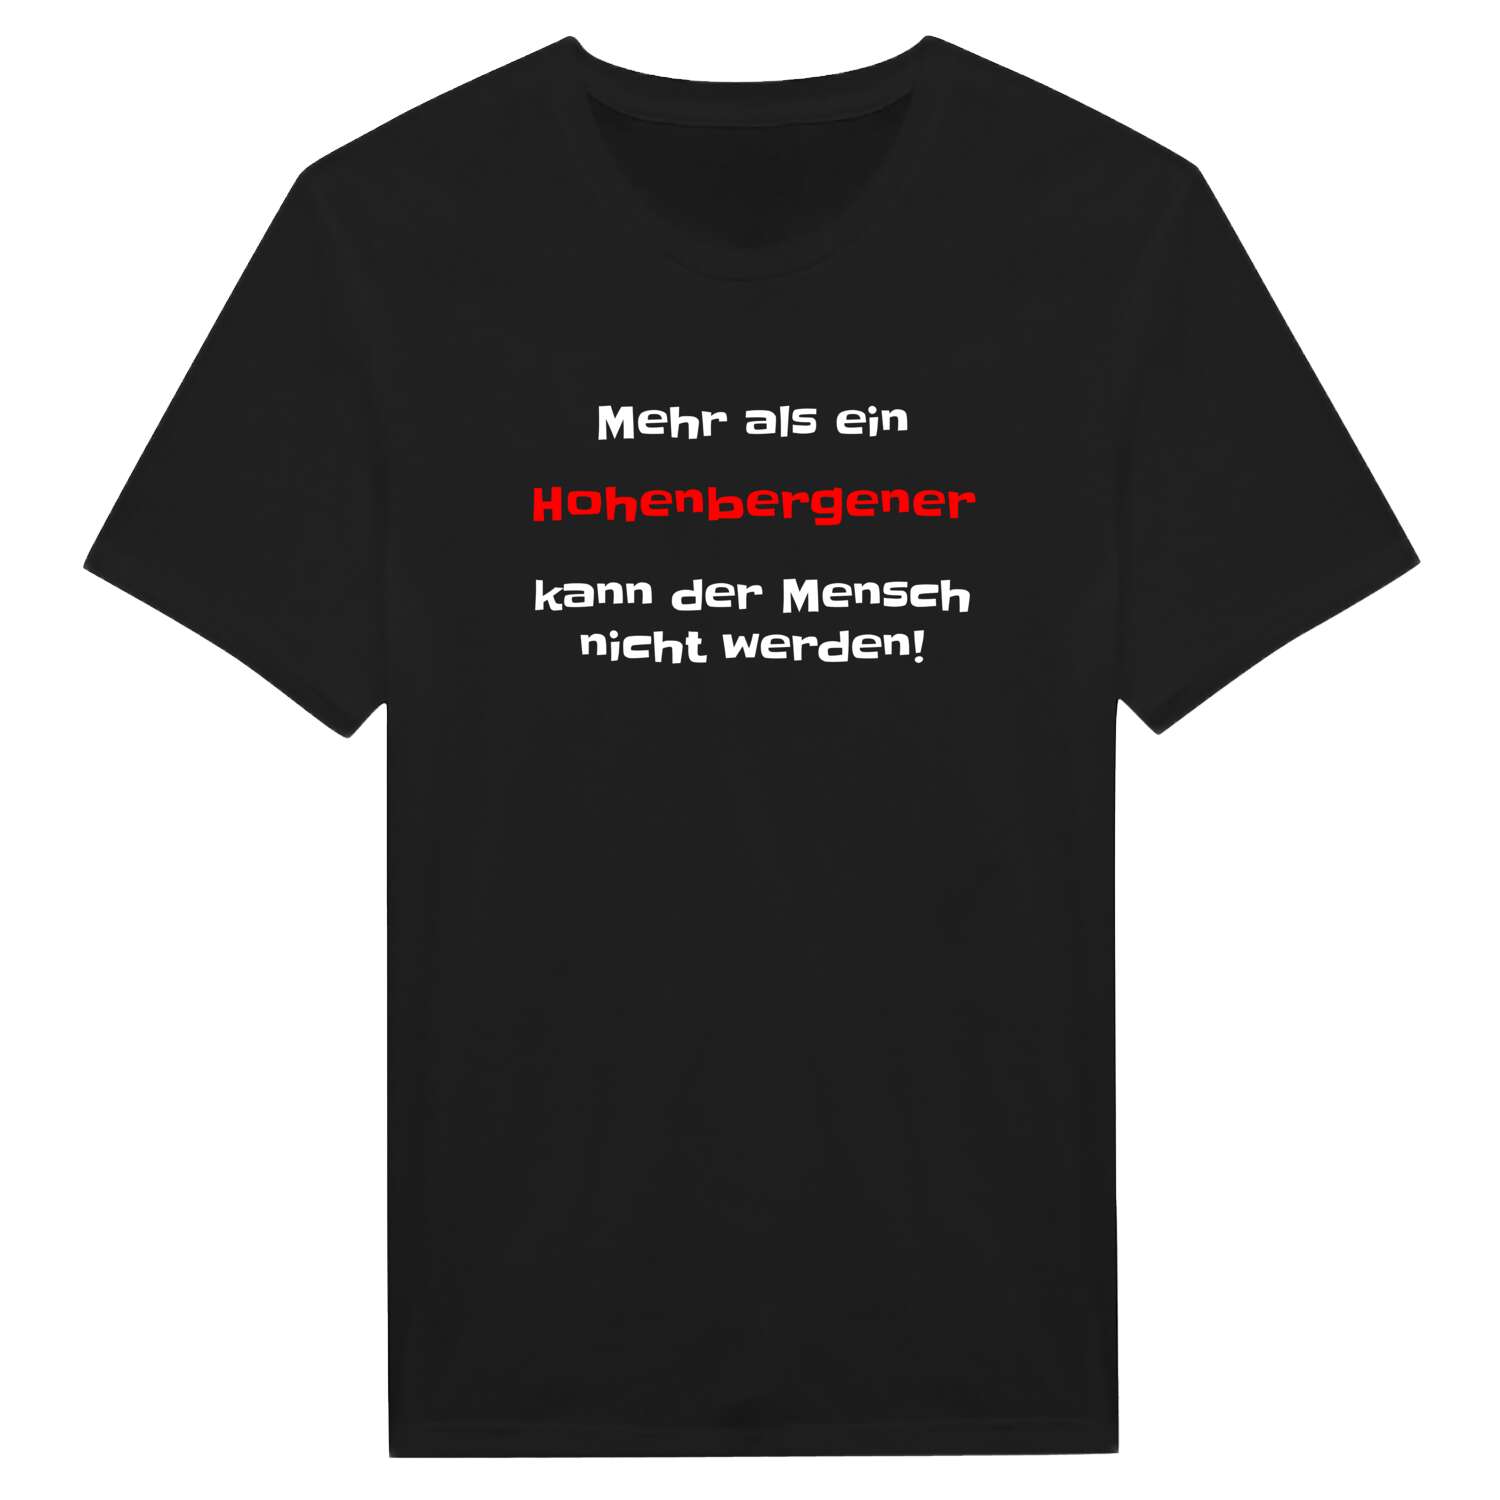 Hohenberge T-Shirt »Mehr als ein«